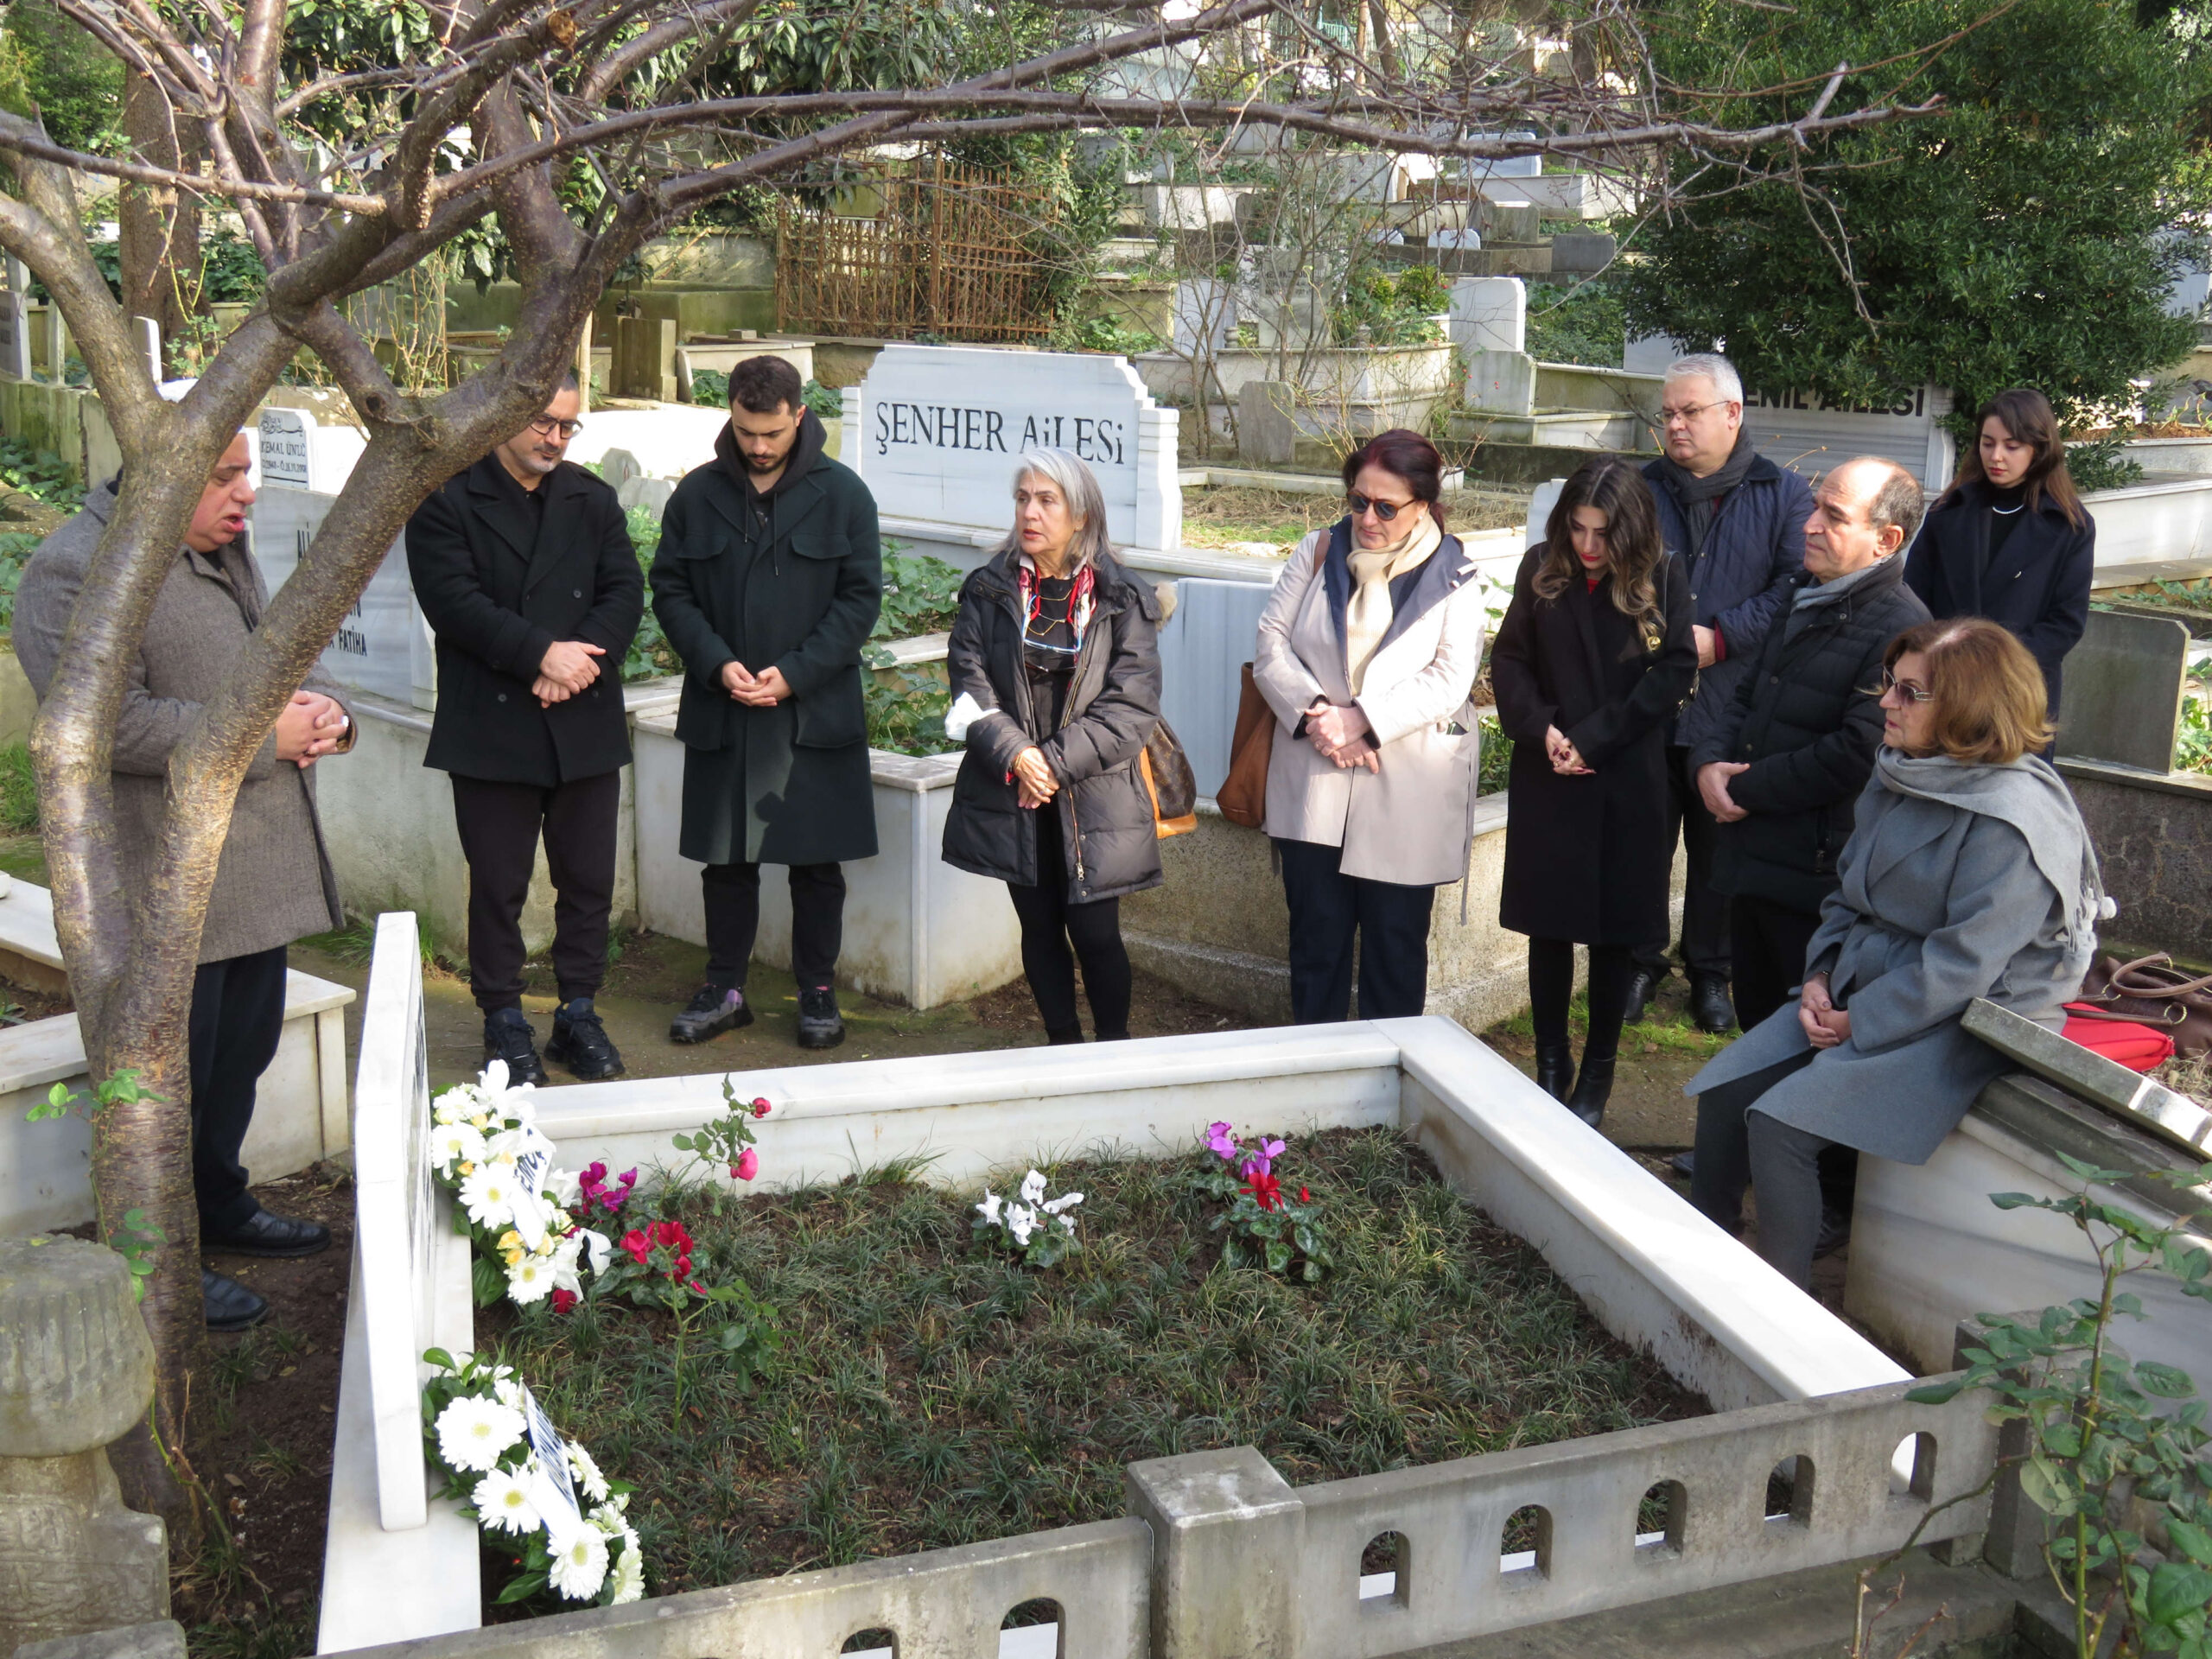 Gazeteci Mehmet Ali Birand’ın mezarı başında anma töreni düzenlendi.